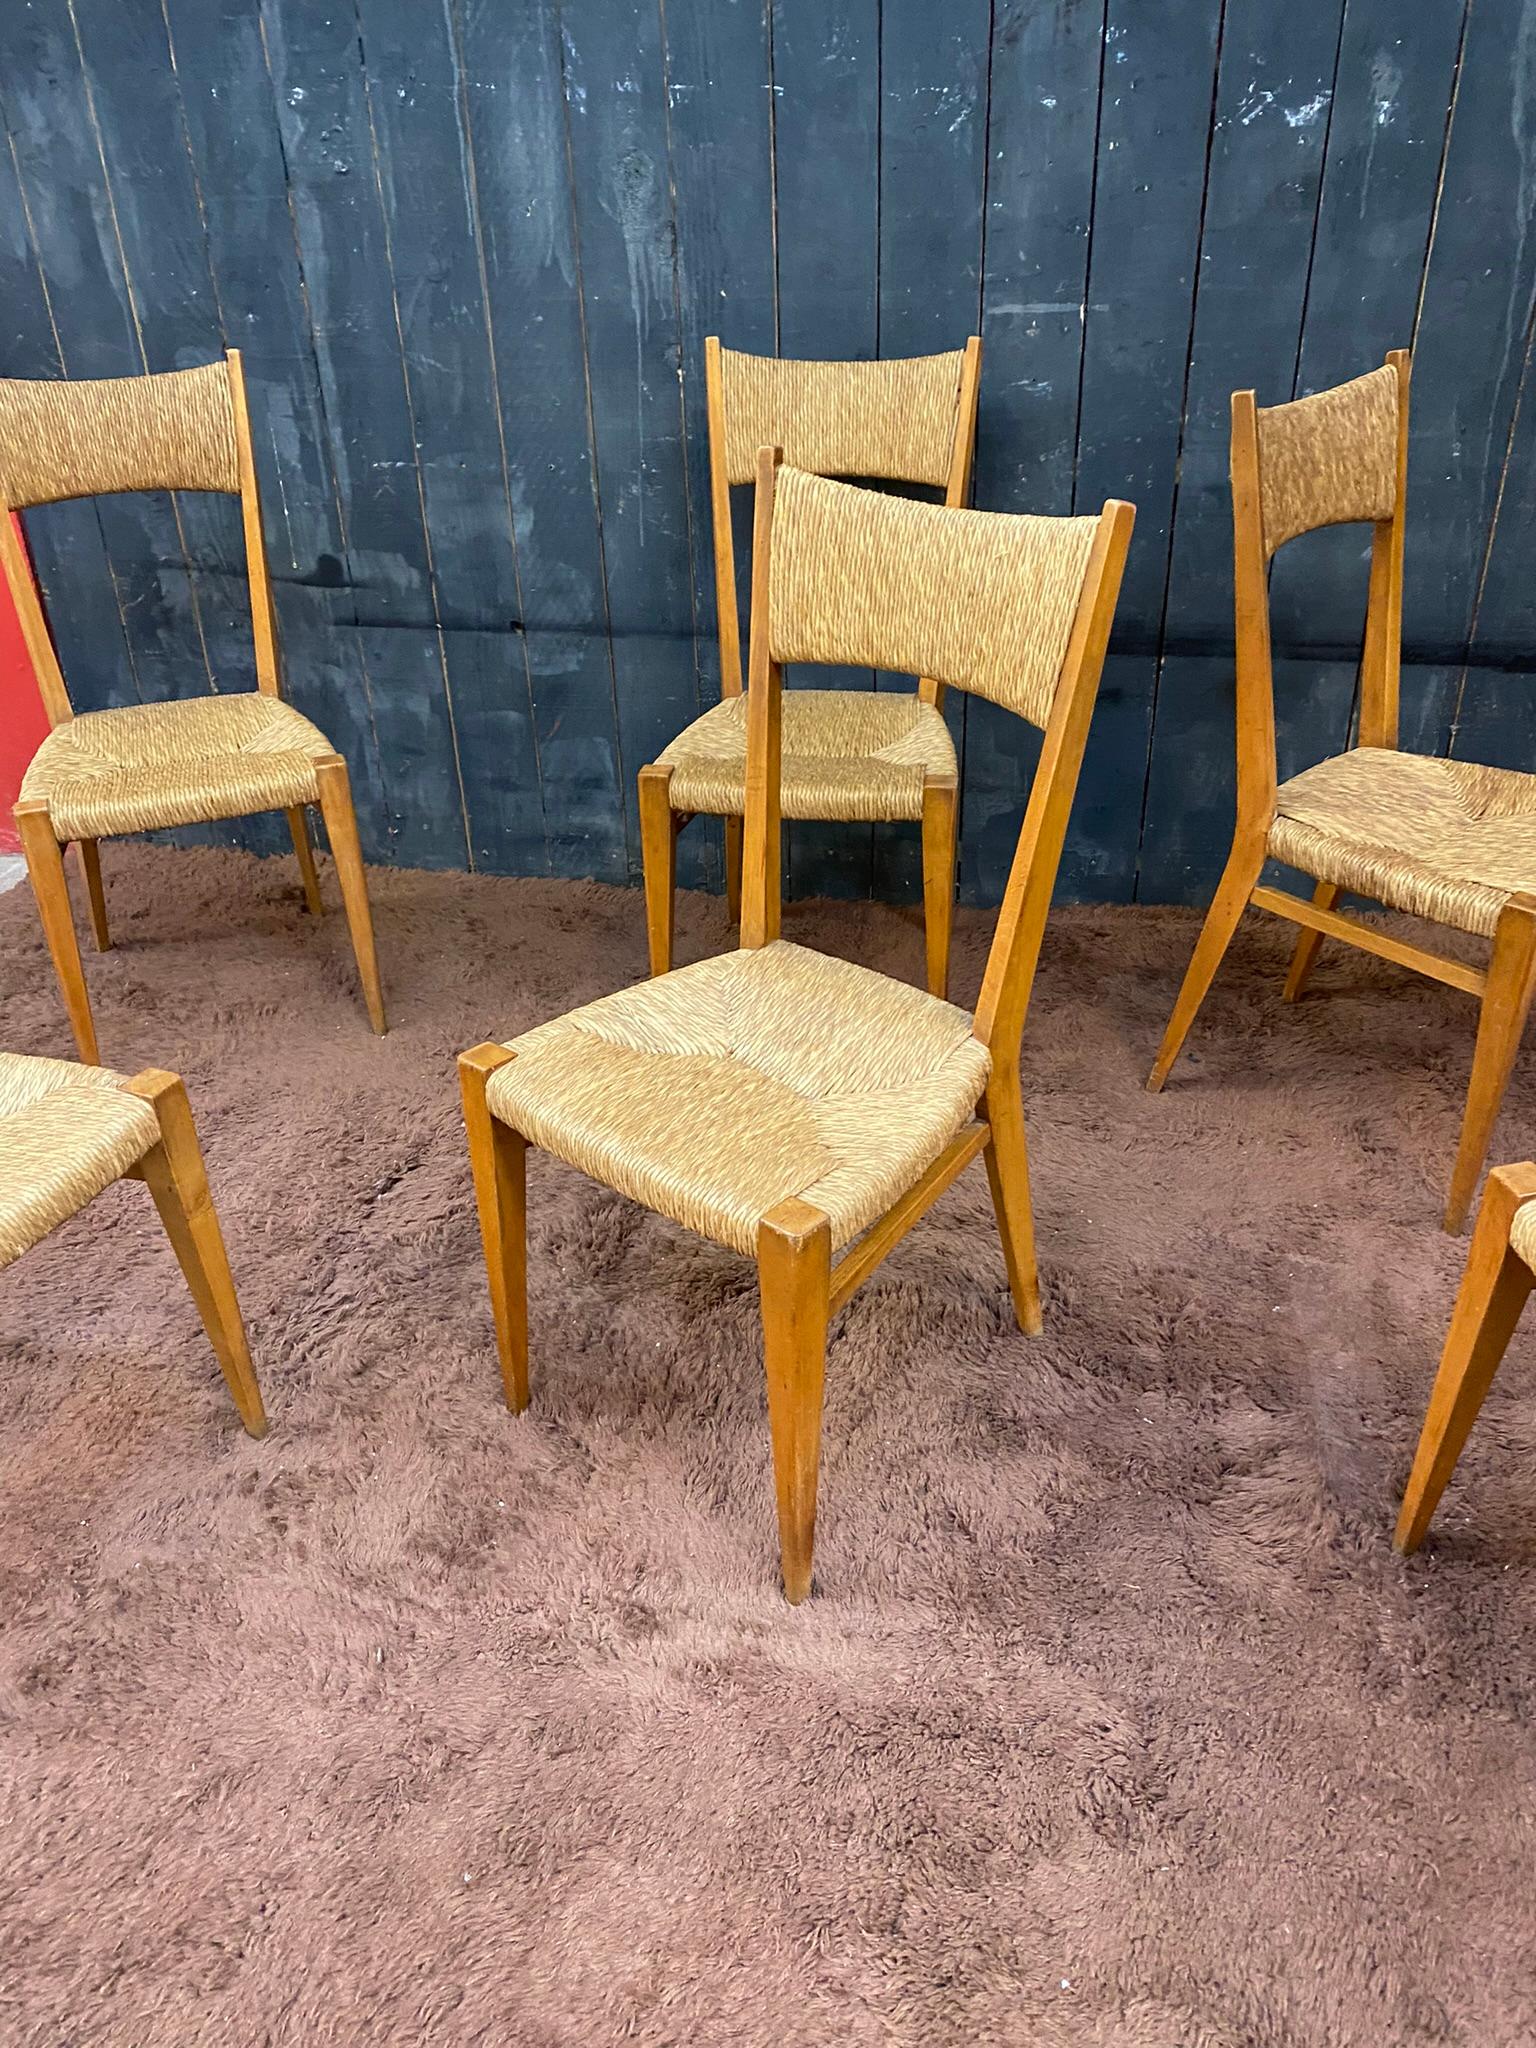 Chêne série de 6 élégantes chaises en chêne, période de reconstruction française vers 1950 en vente